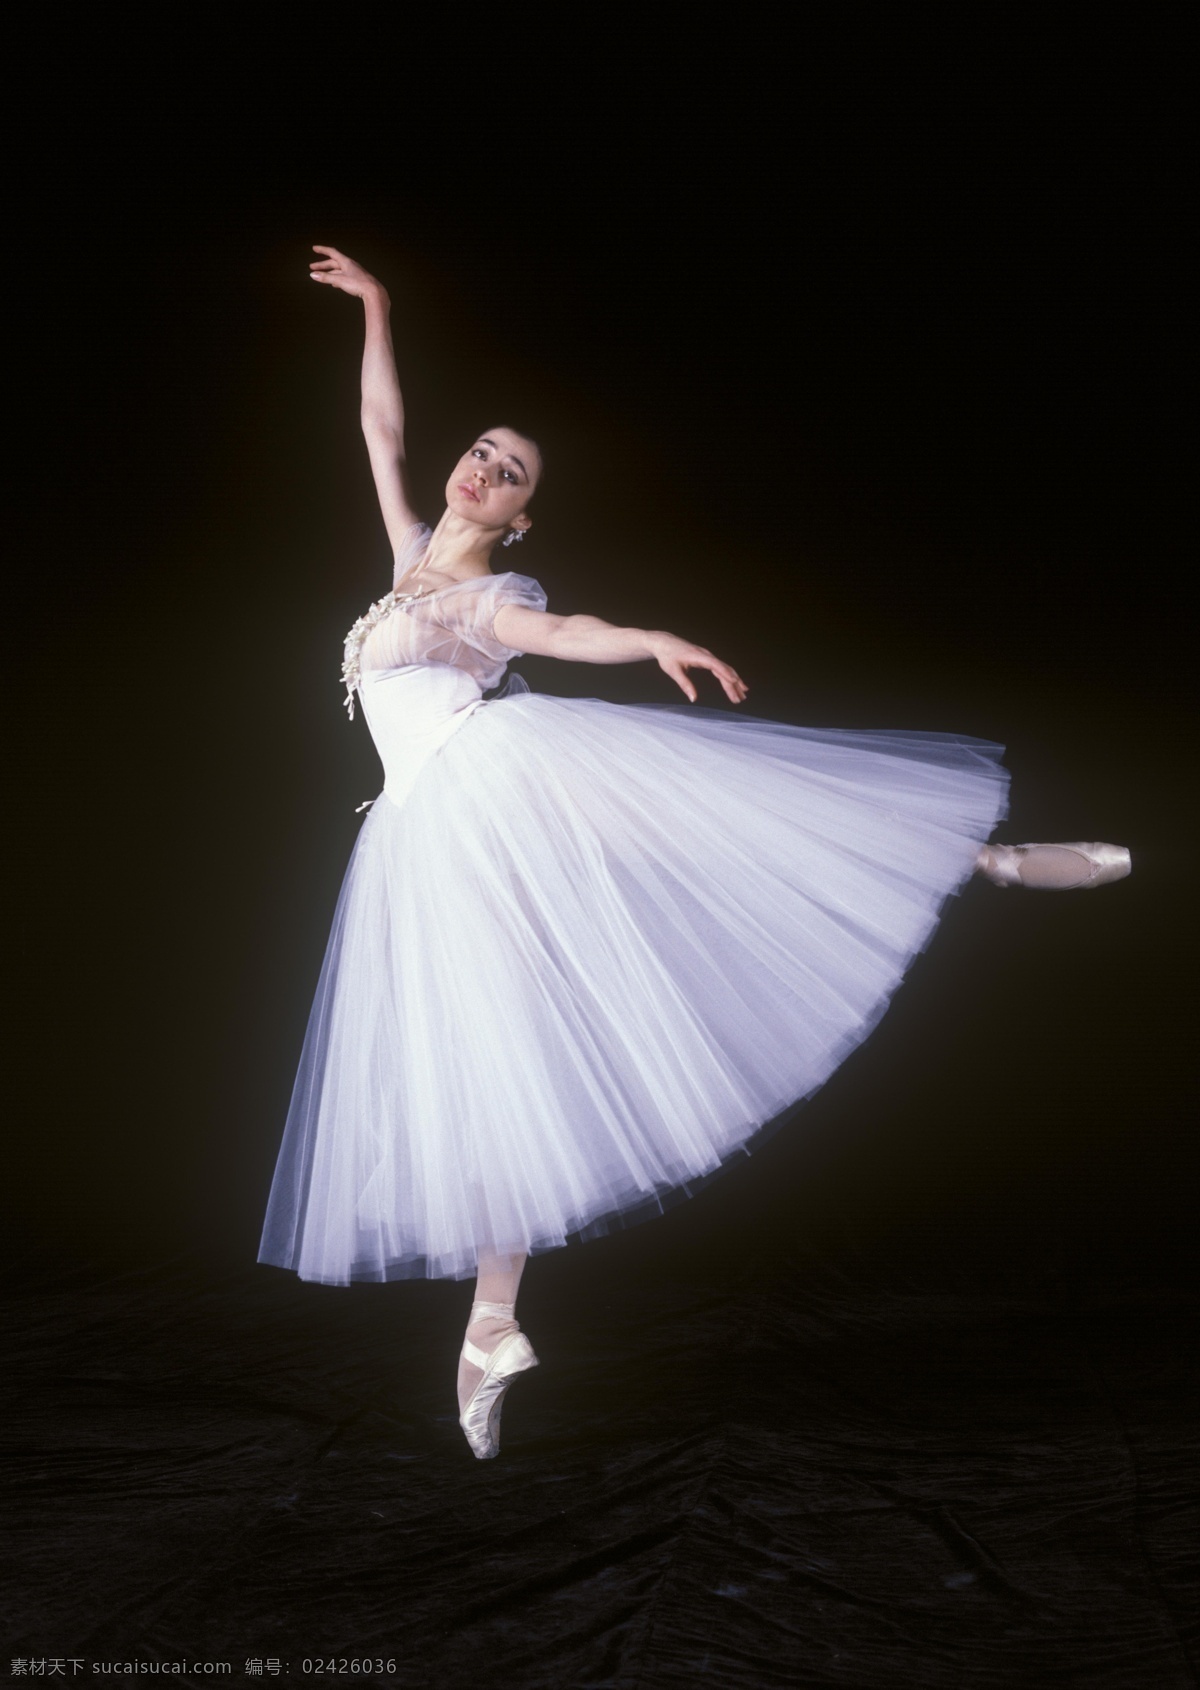 吉赛尔 芭蕾 芭蕾舞剧 法国 文化艺术 舞蹈音乐 摄影图库